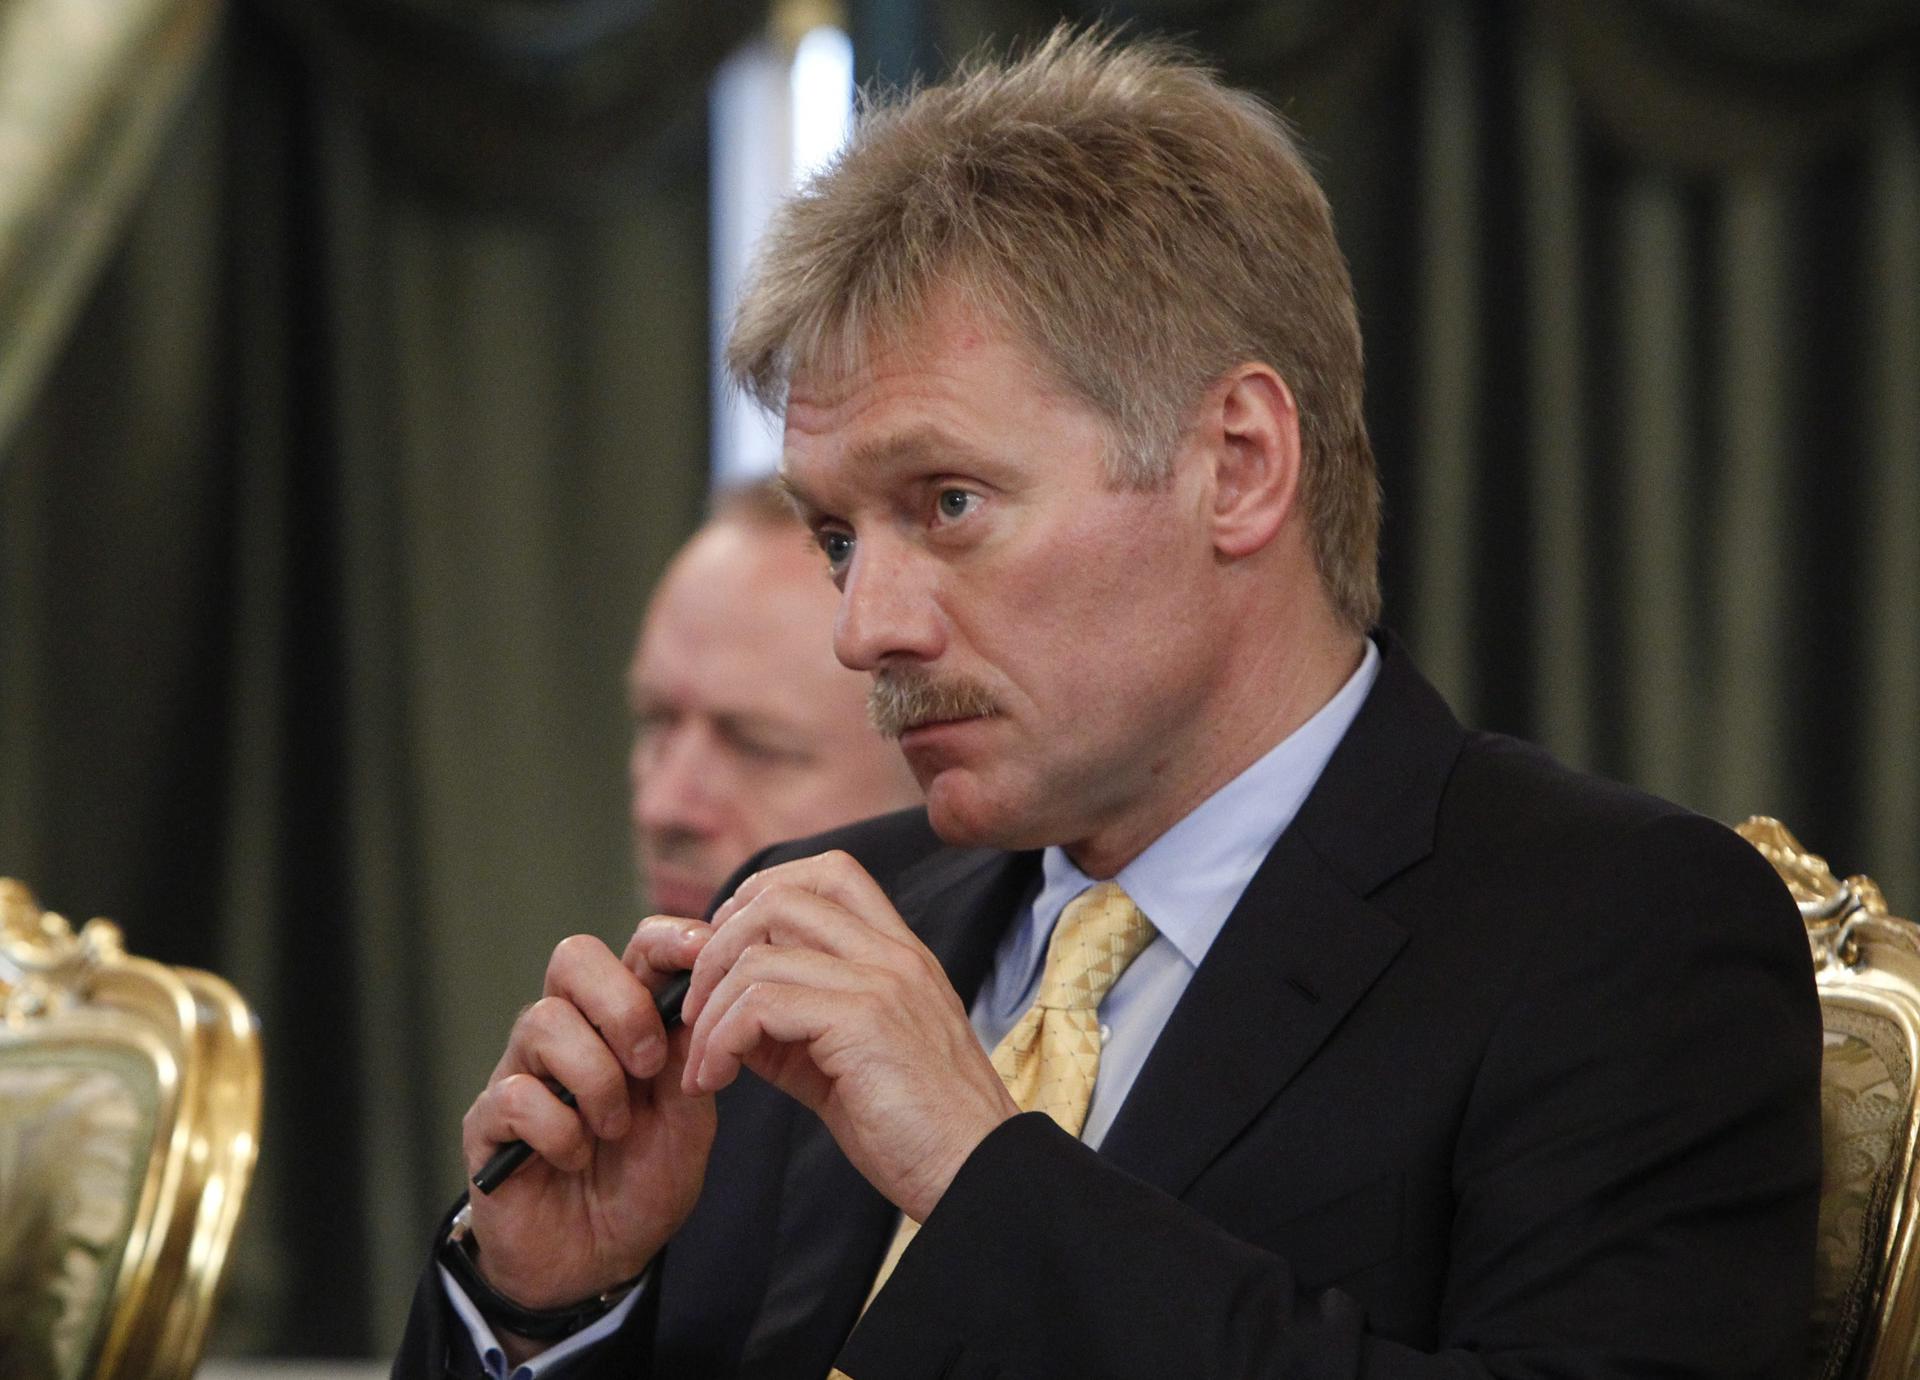 Foto de archivo del portavoz del Kremlin, Dmitri Peskov. EFE/Maxim Shemetov/Pool